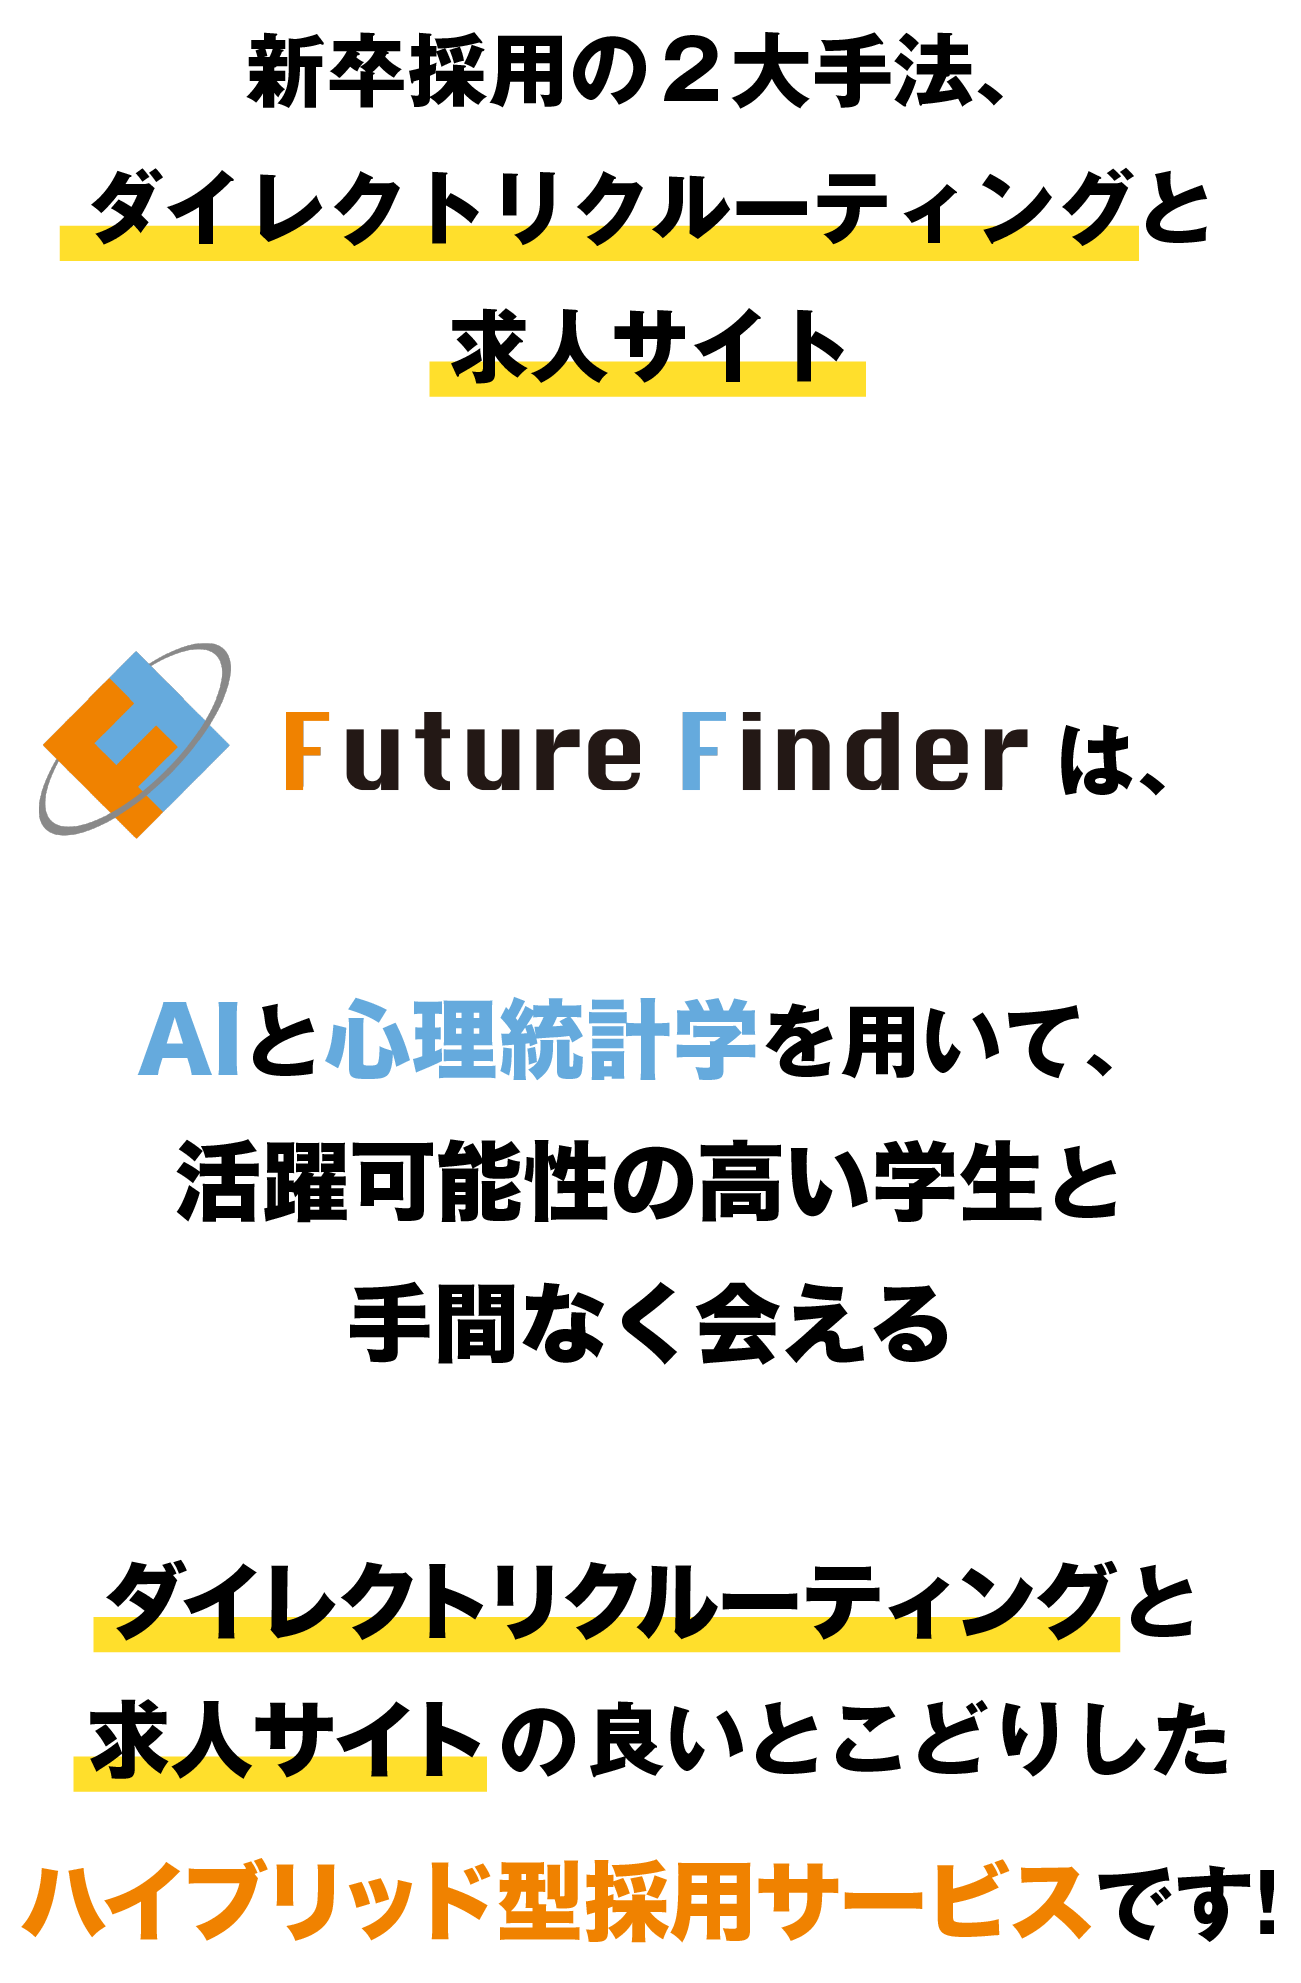 新卒採用の２大手法、ダイレクトリクルーティングと求人サイト。FutureFinderは、AIと心理統計学を用いて、活躍可能性の高い学生と手間なく会える、ダイレクトリクルーティングと求人サイトを良いとこどりしたハイブリッド型採用サービスです！